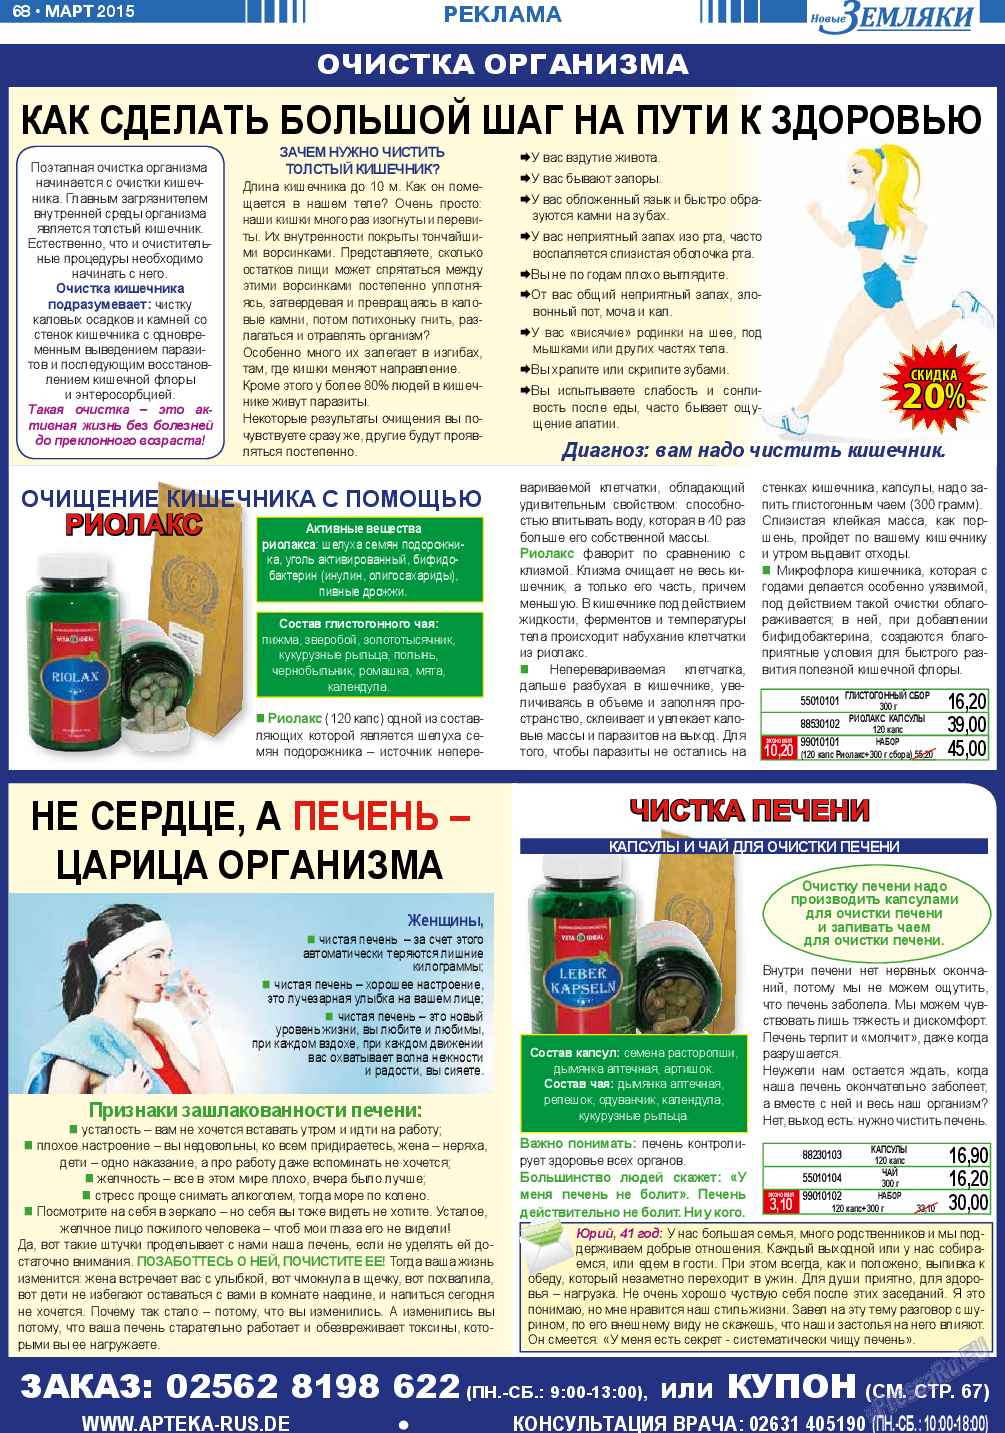 Новые Земляки (газета). 2015 год, номер 3, стр. 68